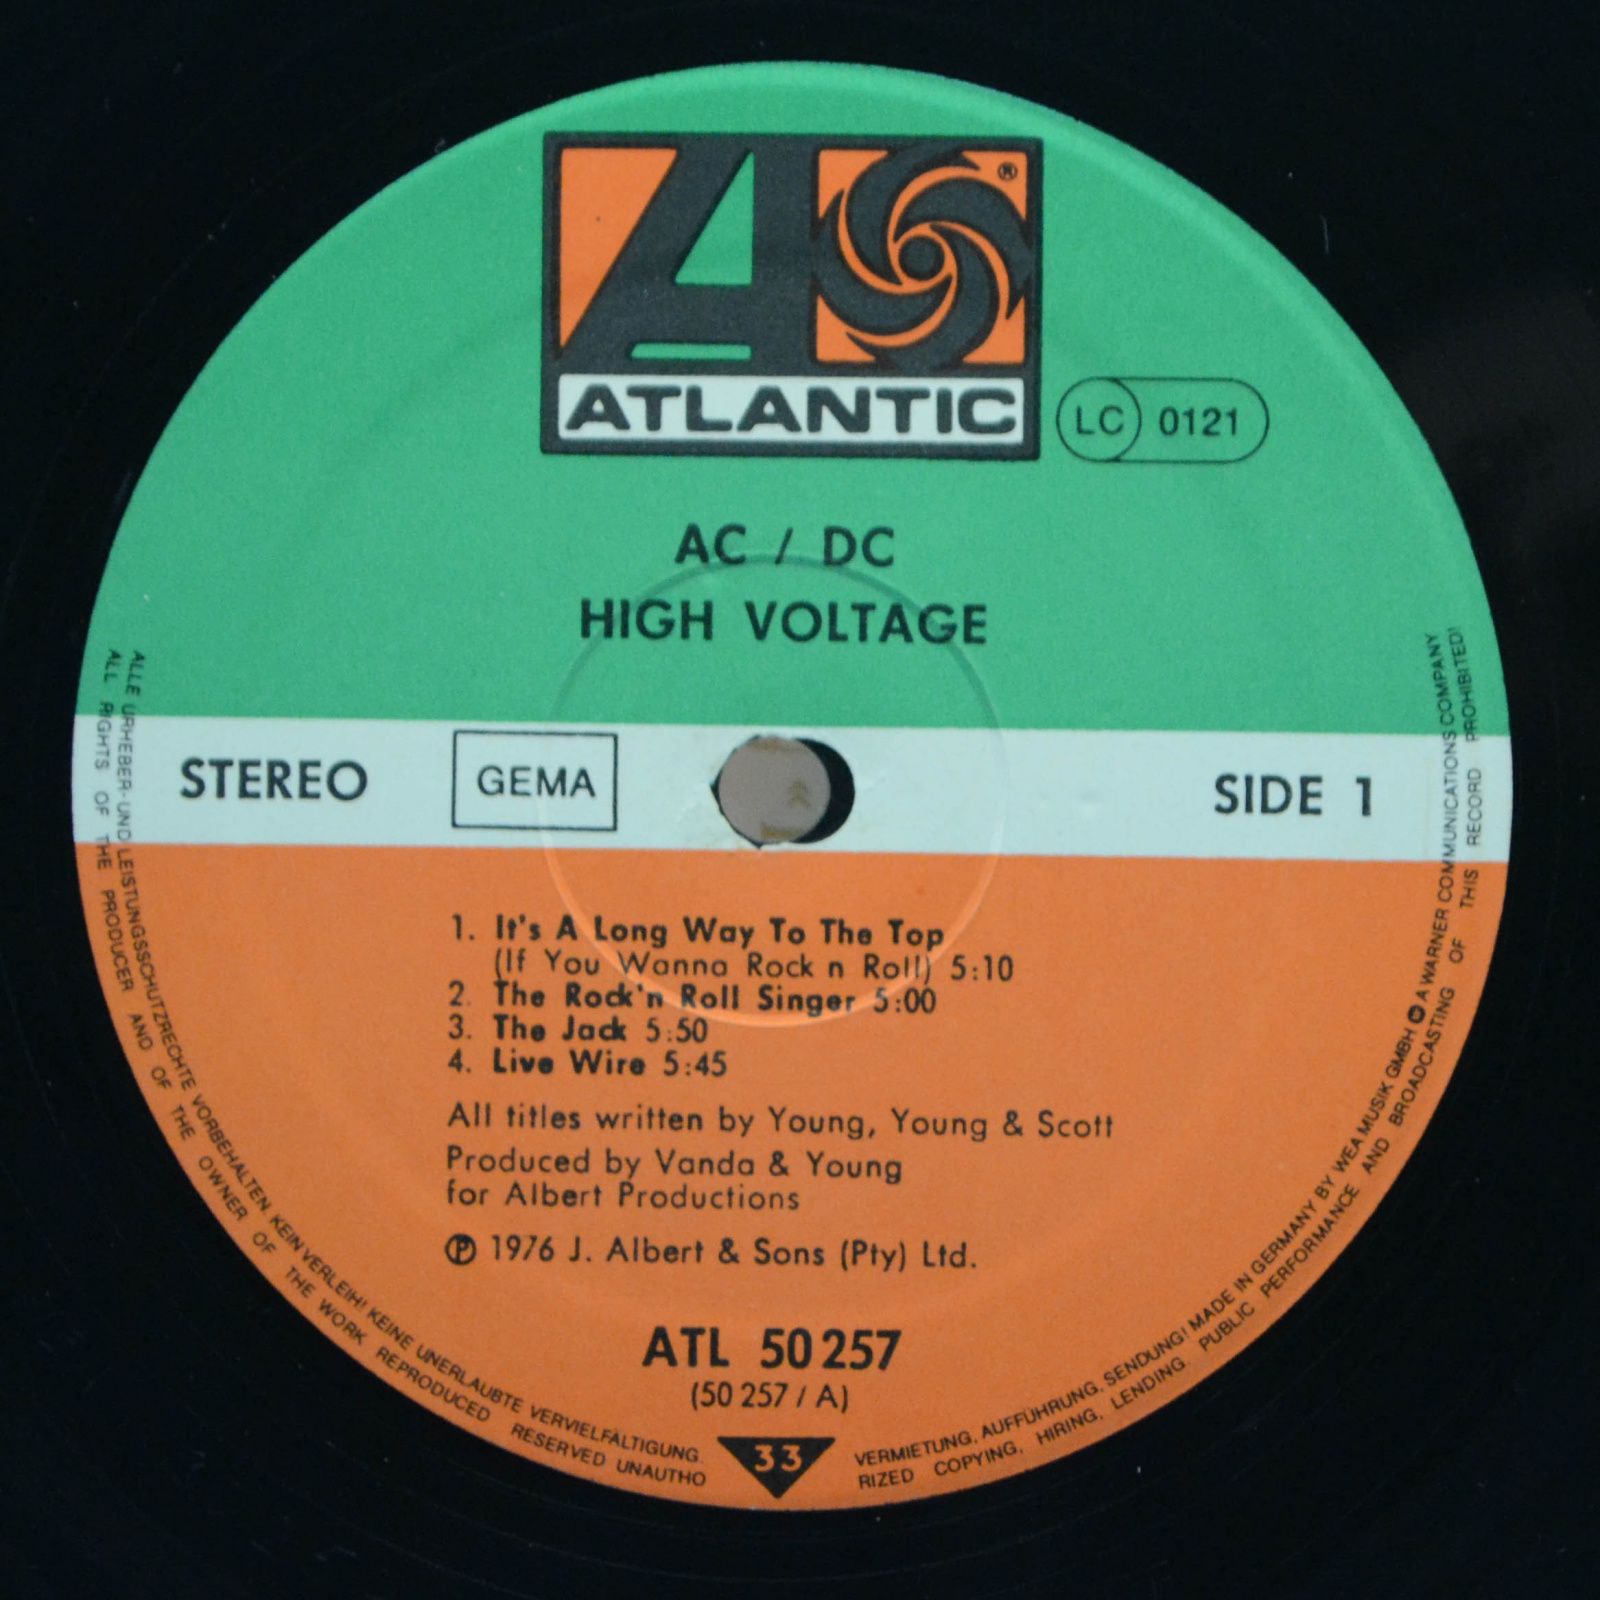 AC/DC — High Voltage, 1976